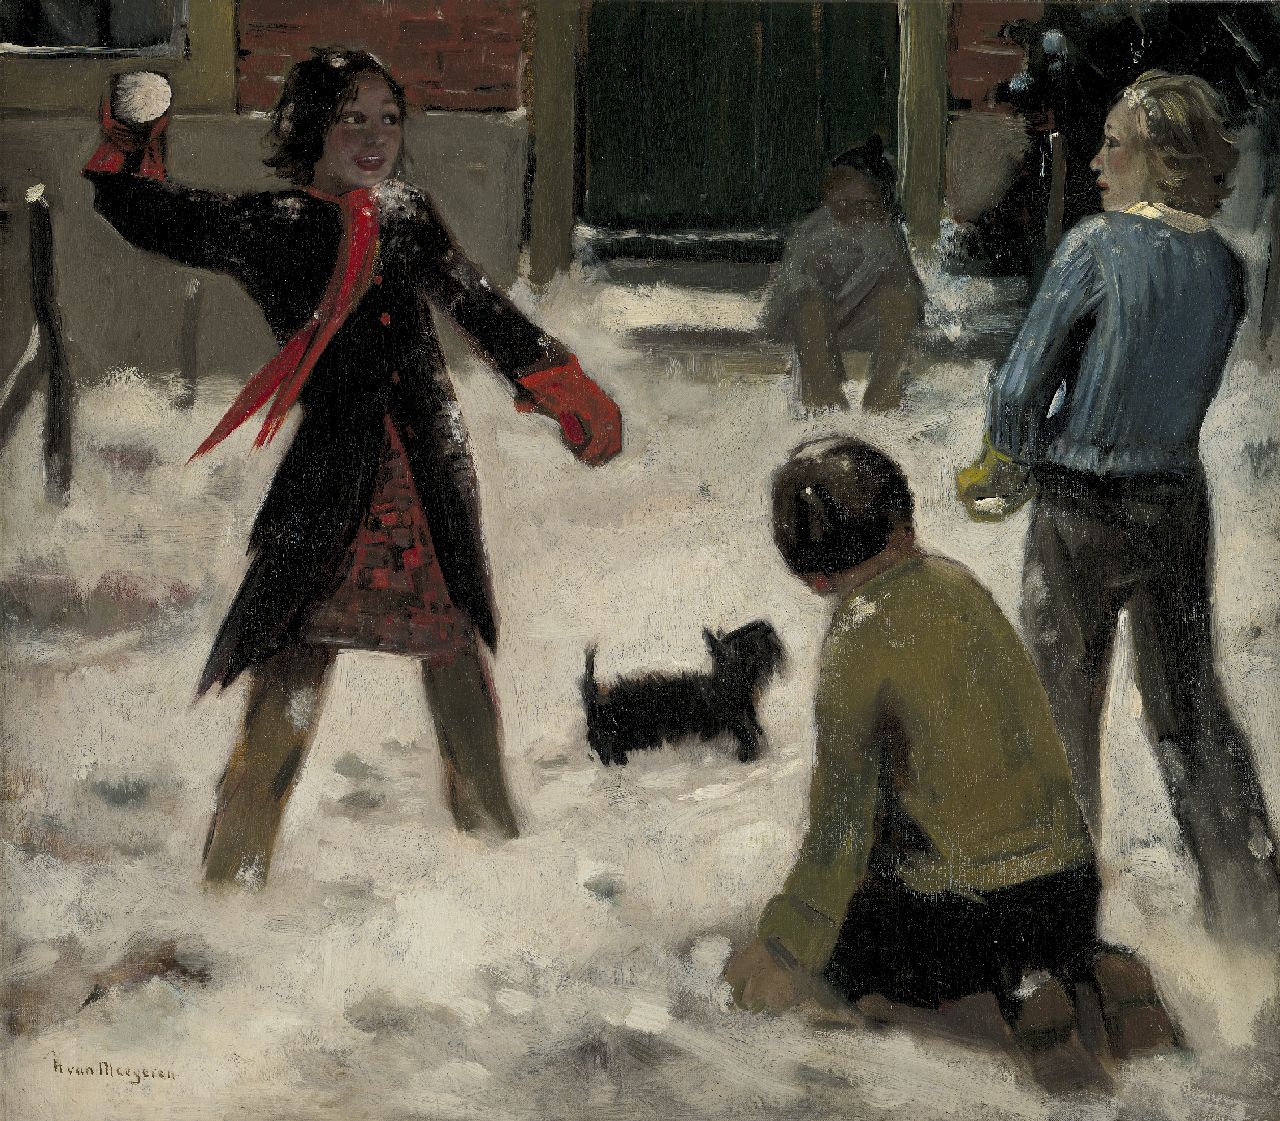 Meegeren H.A. van | Henricus Antonius 'Han' van Meegeren, Snowball fight, oil on canvas 63.0 x 71.0 cm, signed l.l. and painted ca. 1944-1945